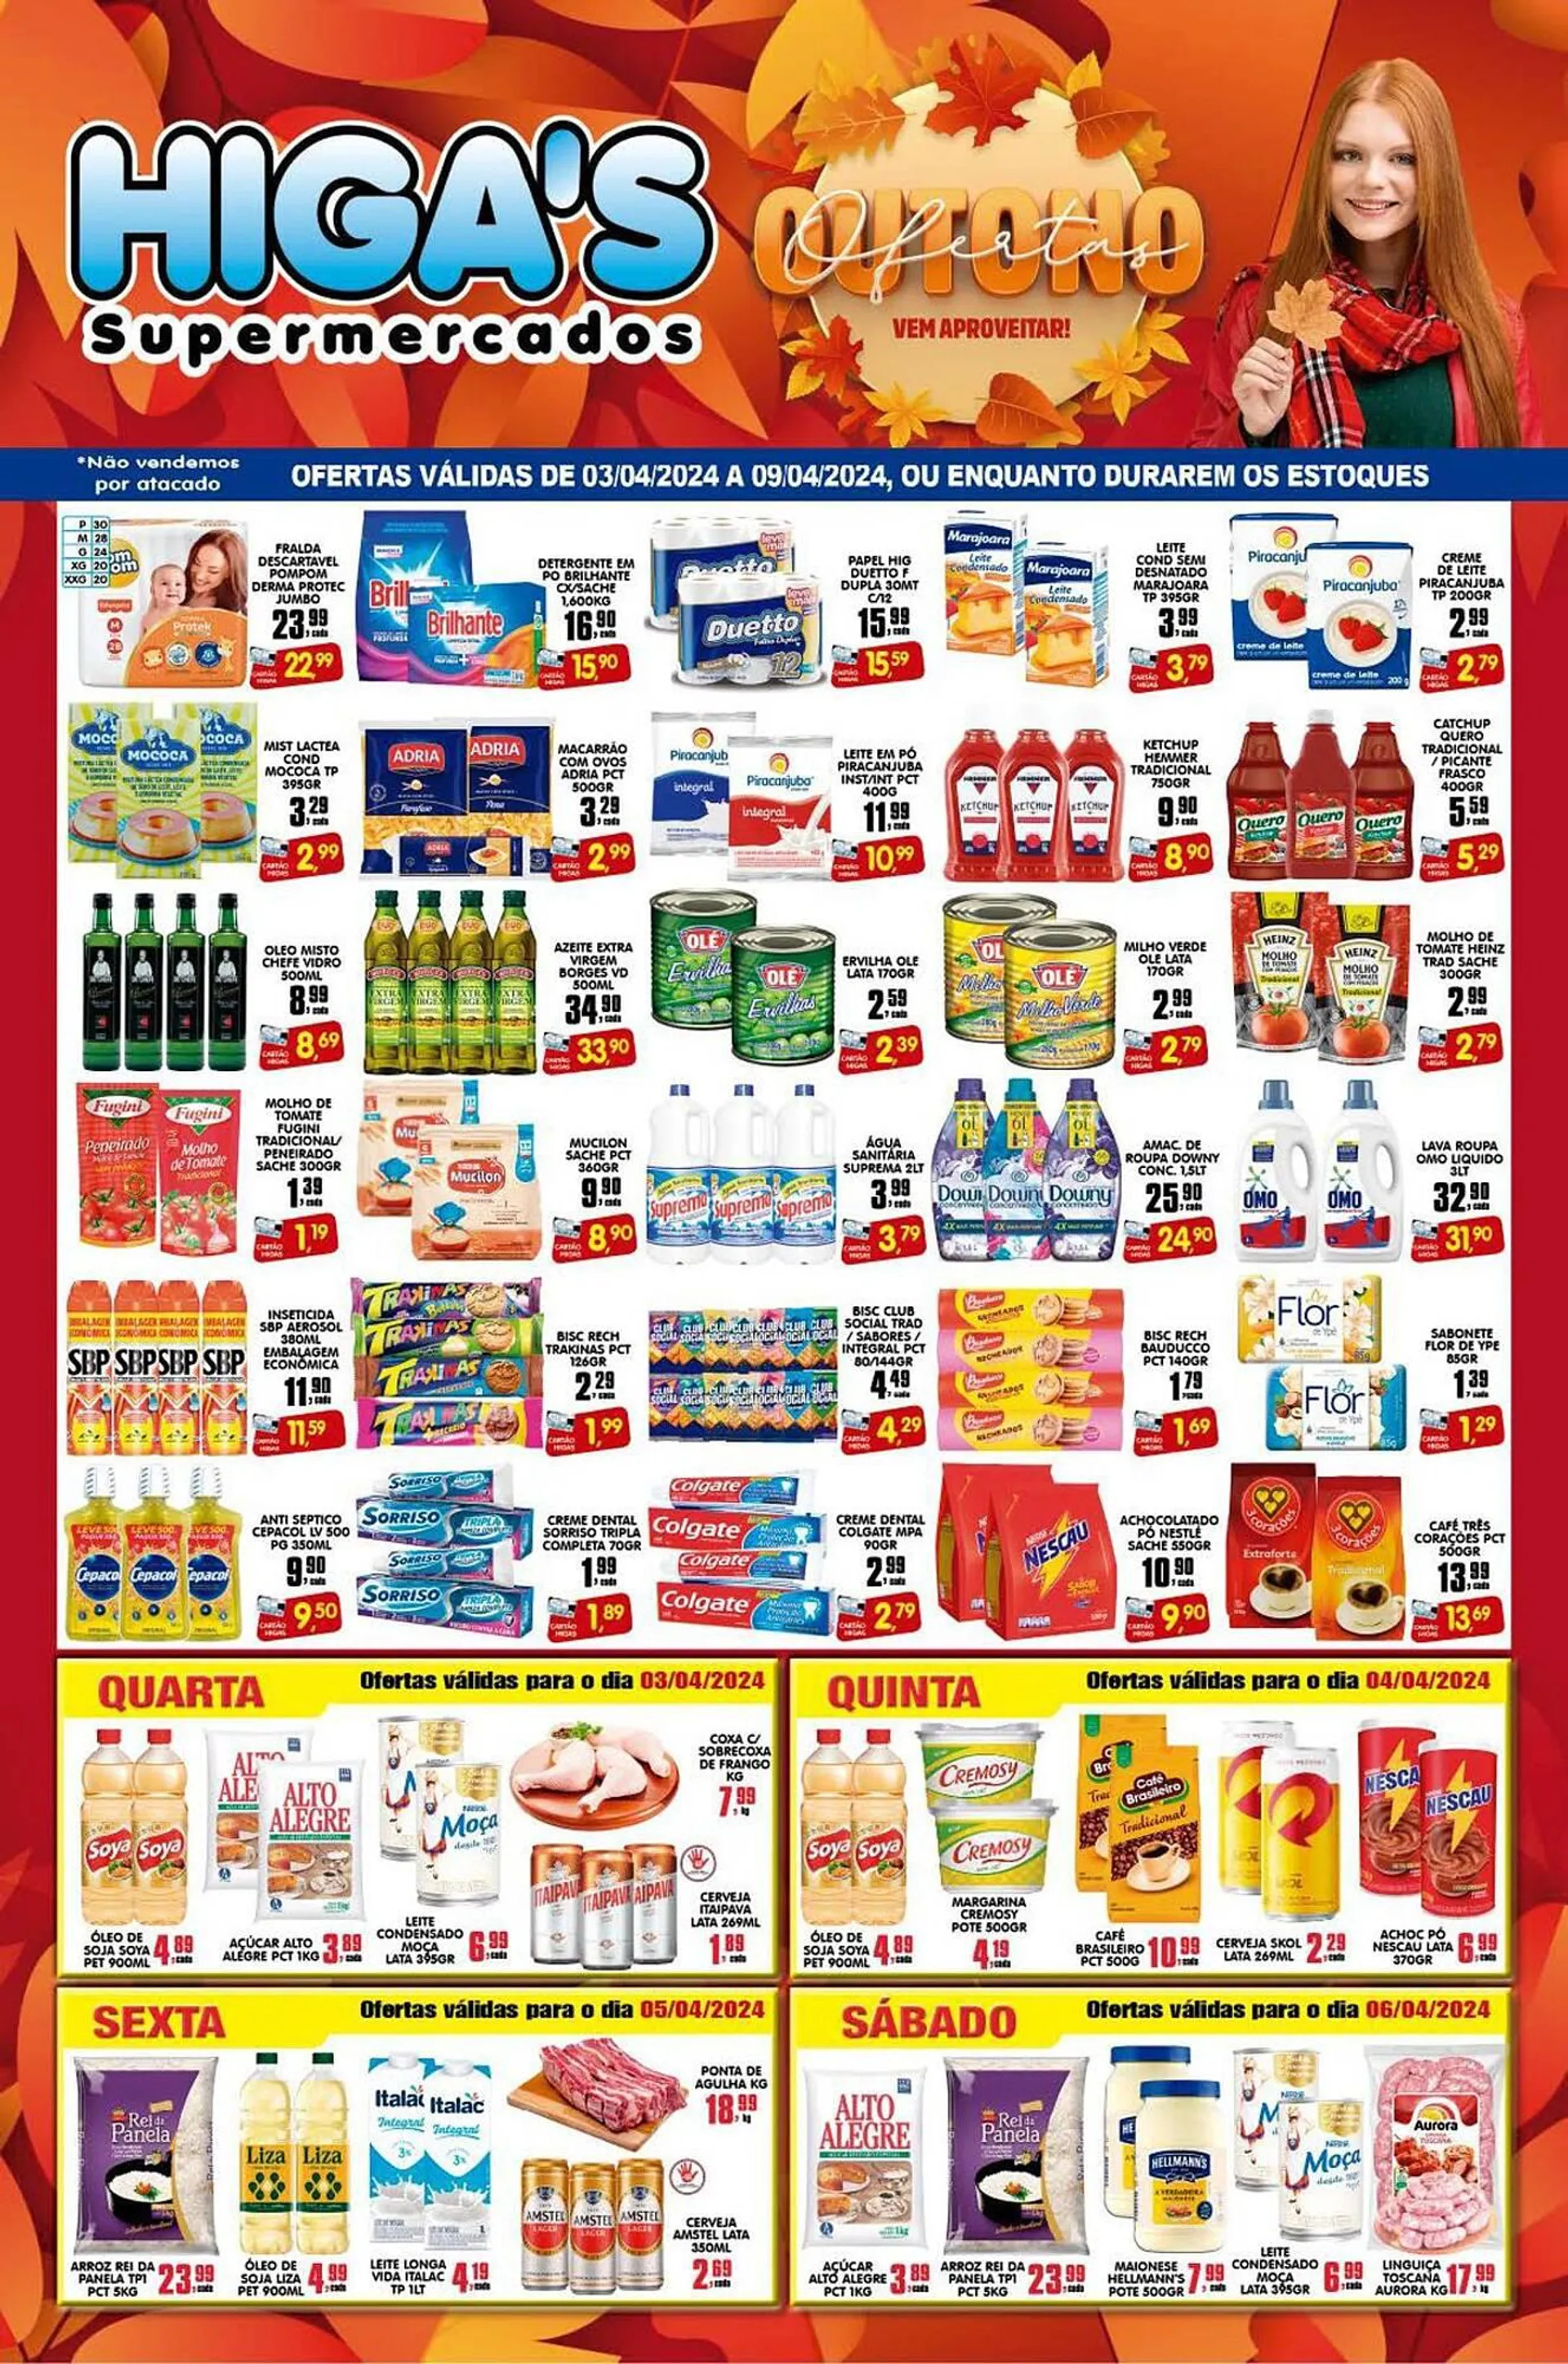 Encarte de Catálogo Higa's Supermercado 2 de abril até 9 de abril 2024 - Pagina 